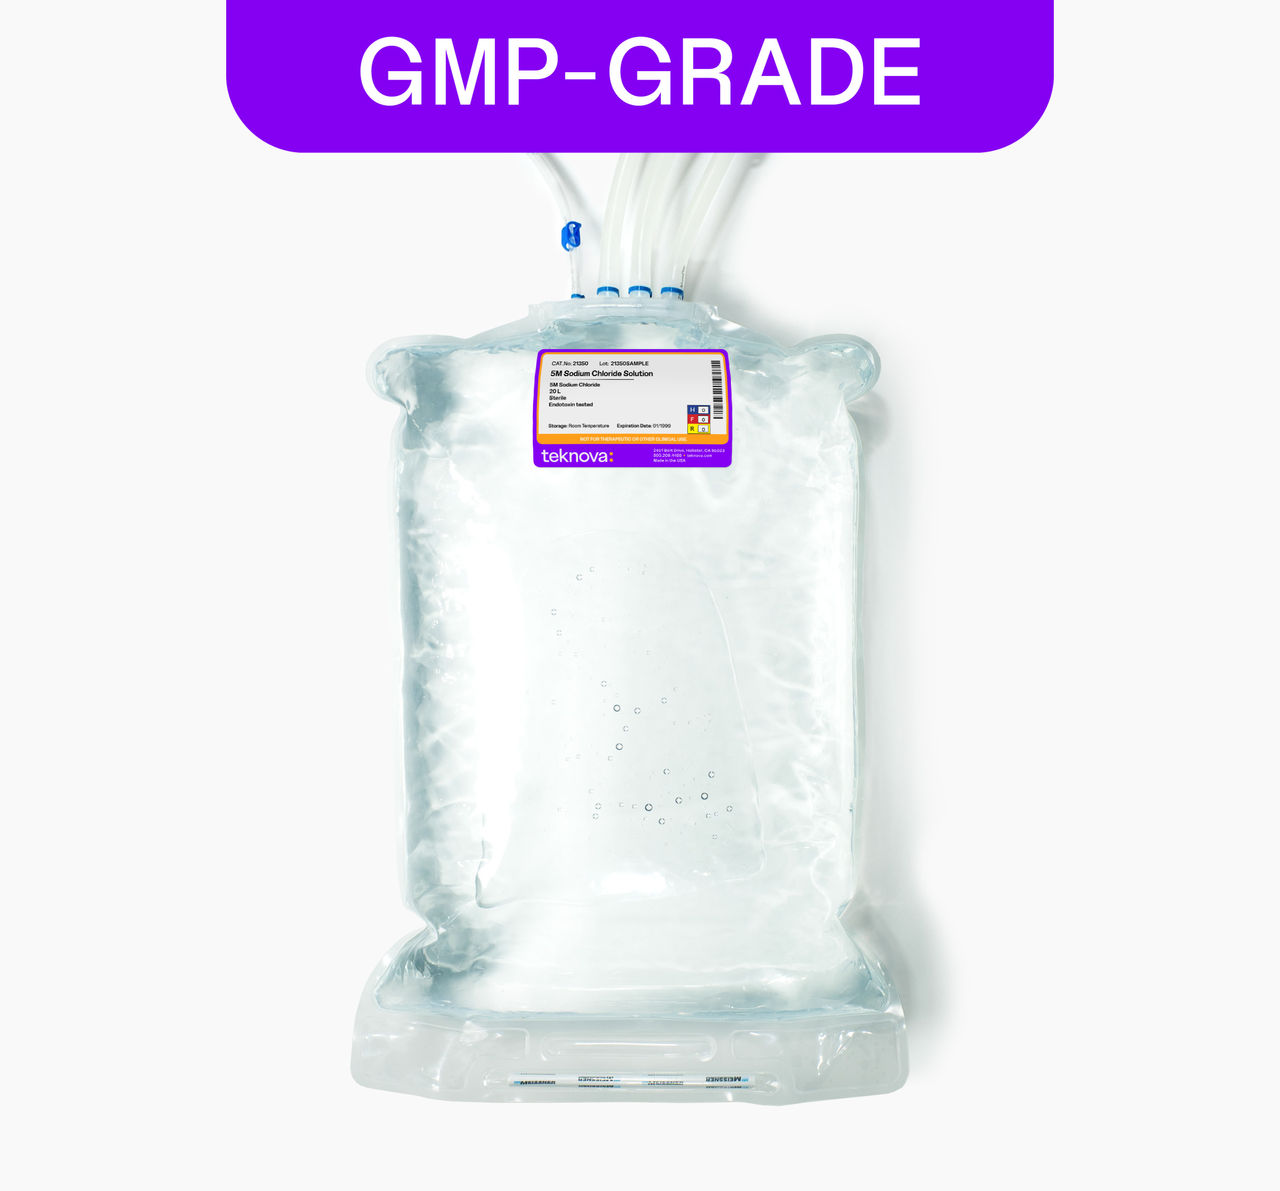 5M Sodium Chloride Solution, 20L bag, GMP-grade